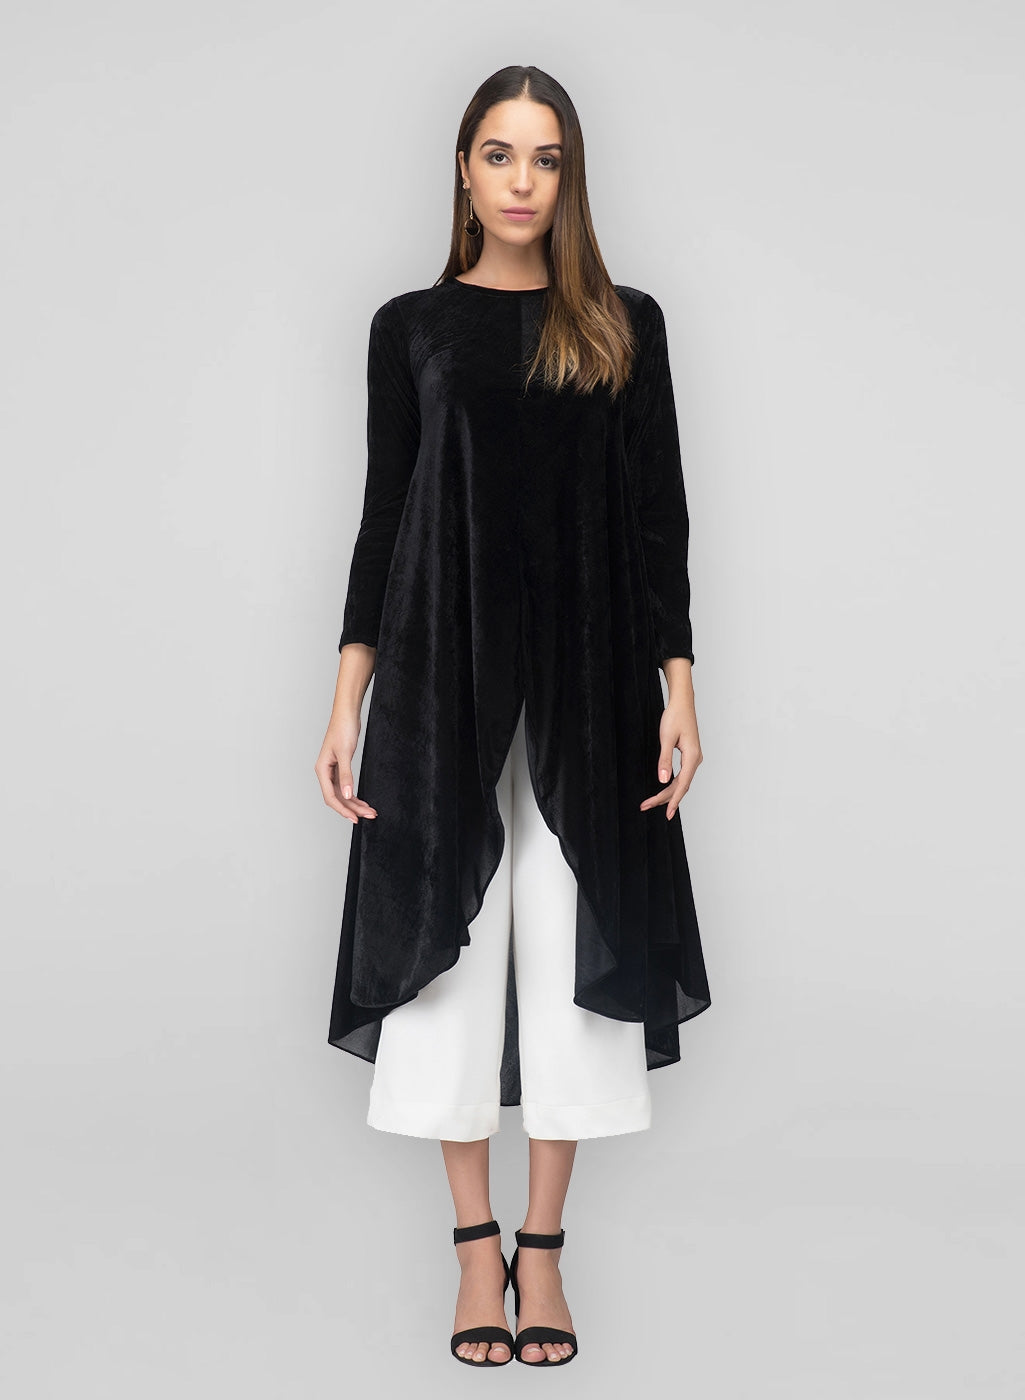 A black velvet a line kurta for women for winter